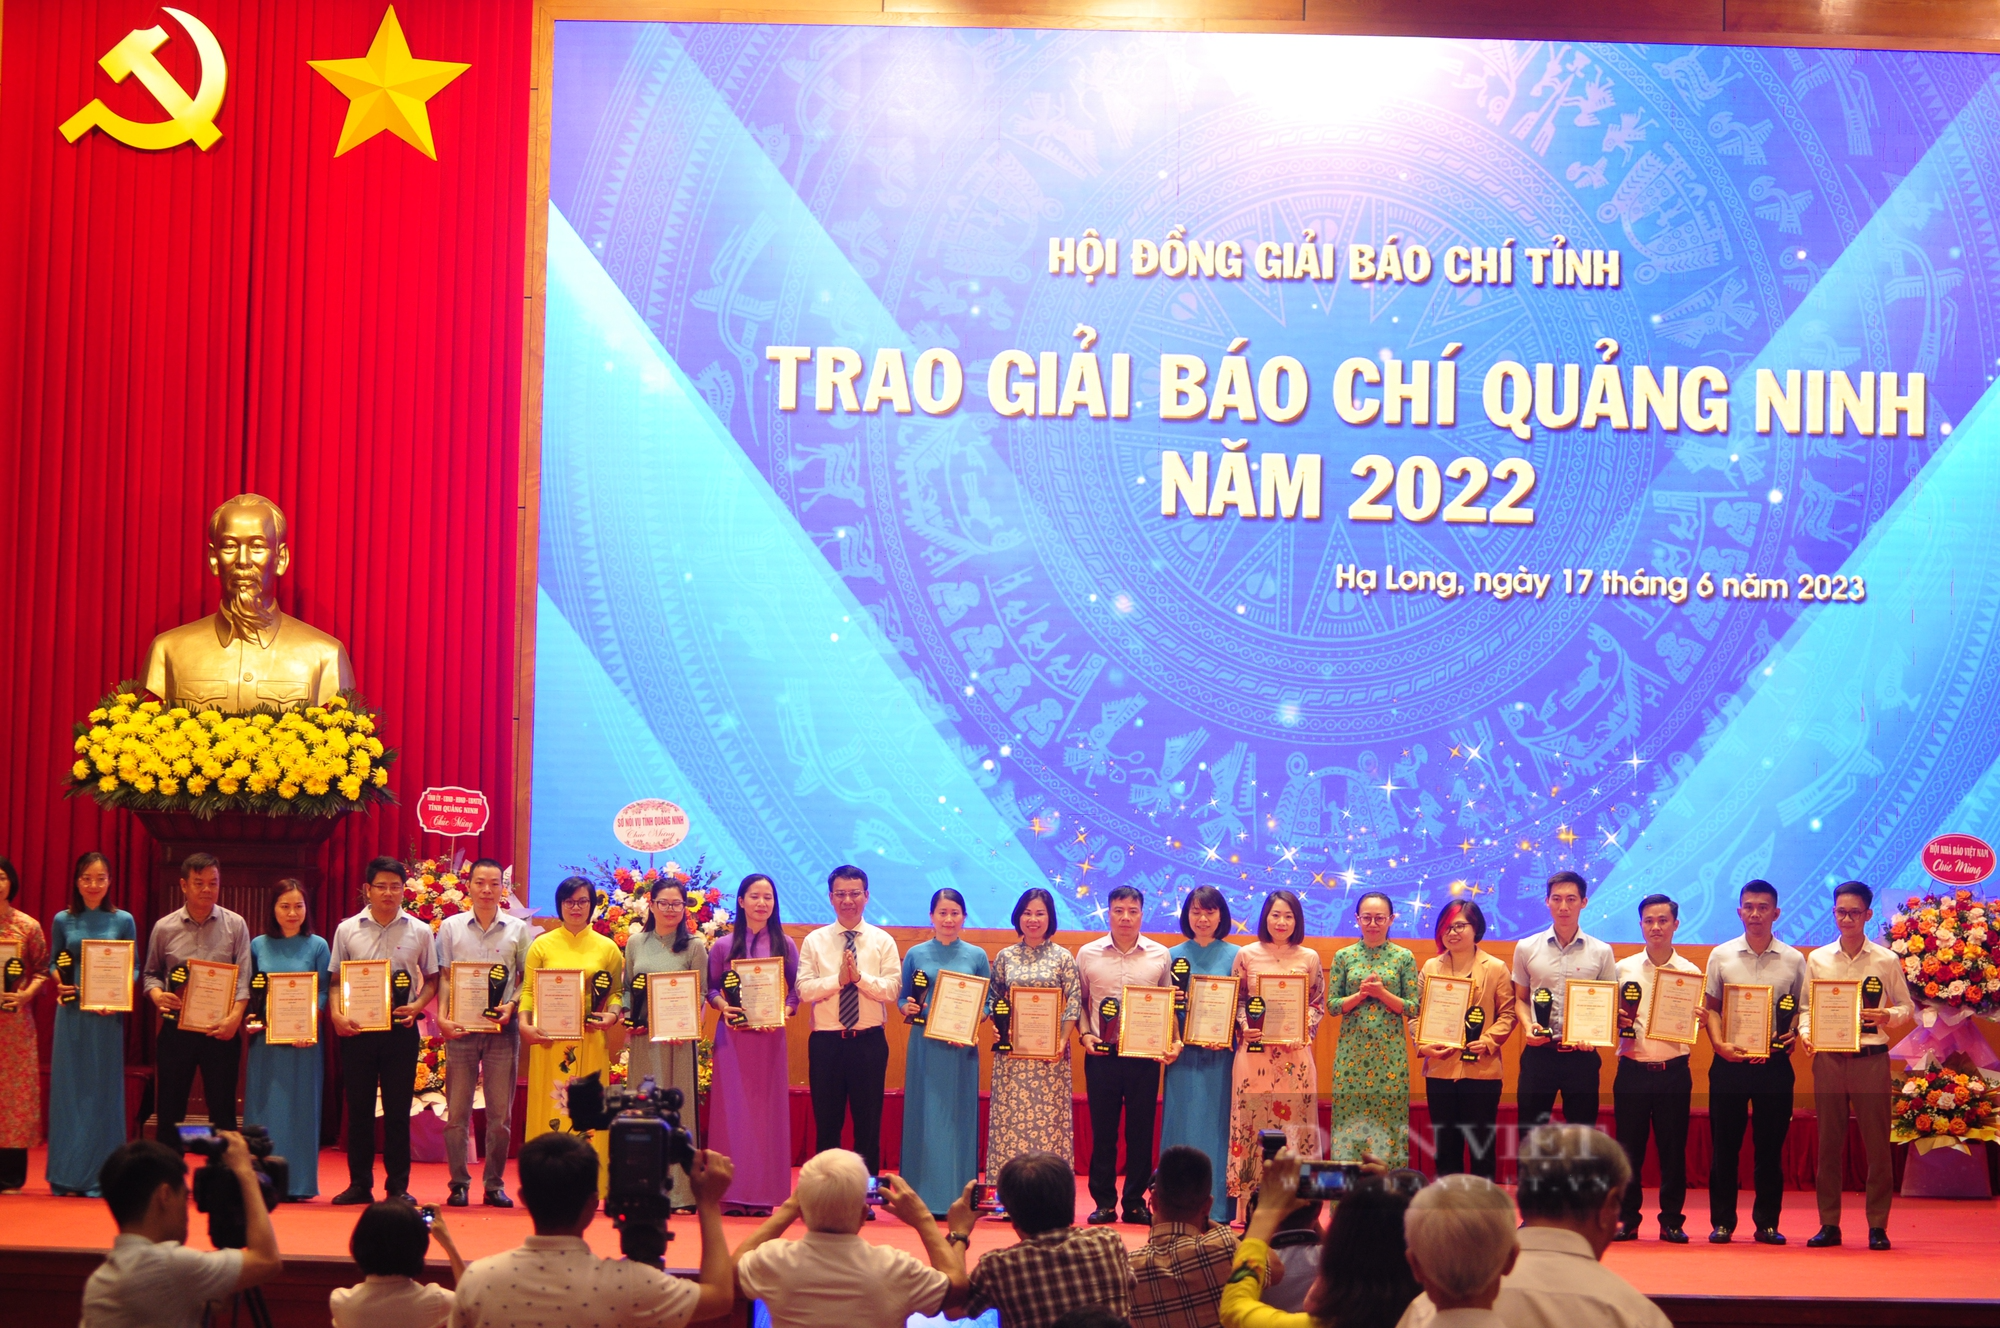 76 tác phẩm báo chí được trao giải báo chí tỉnh Quảng Ninh  - Ảnh 3.